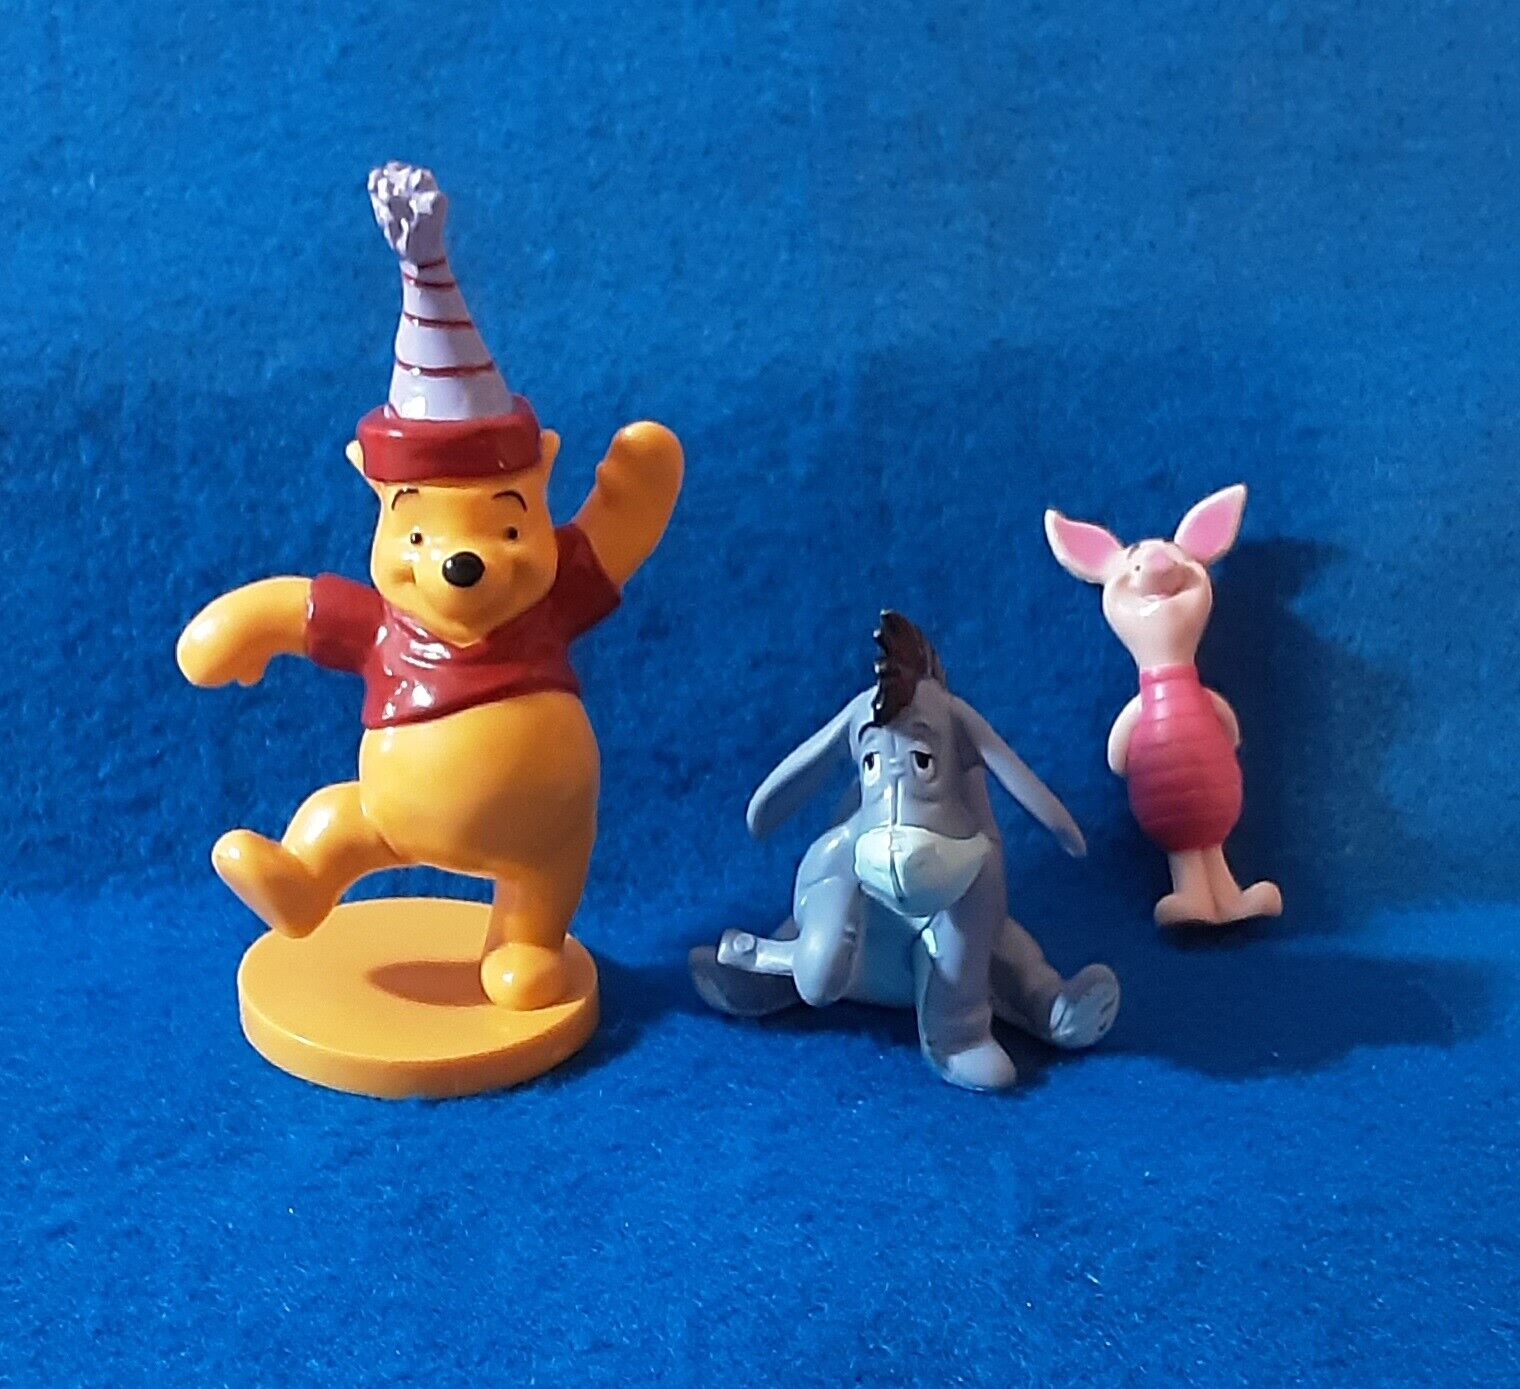 Set 3 Winnie Pooh PVC FiguresToppers Birthday Pooh Piglet Eeyore